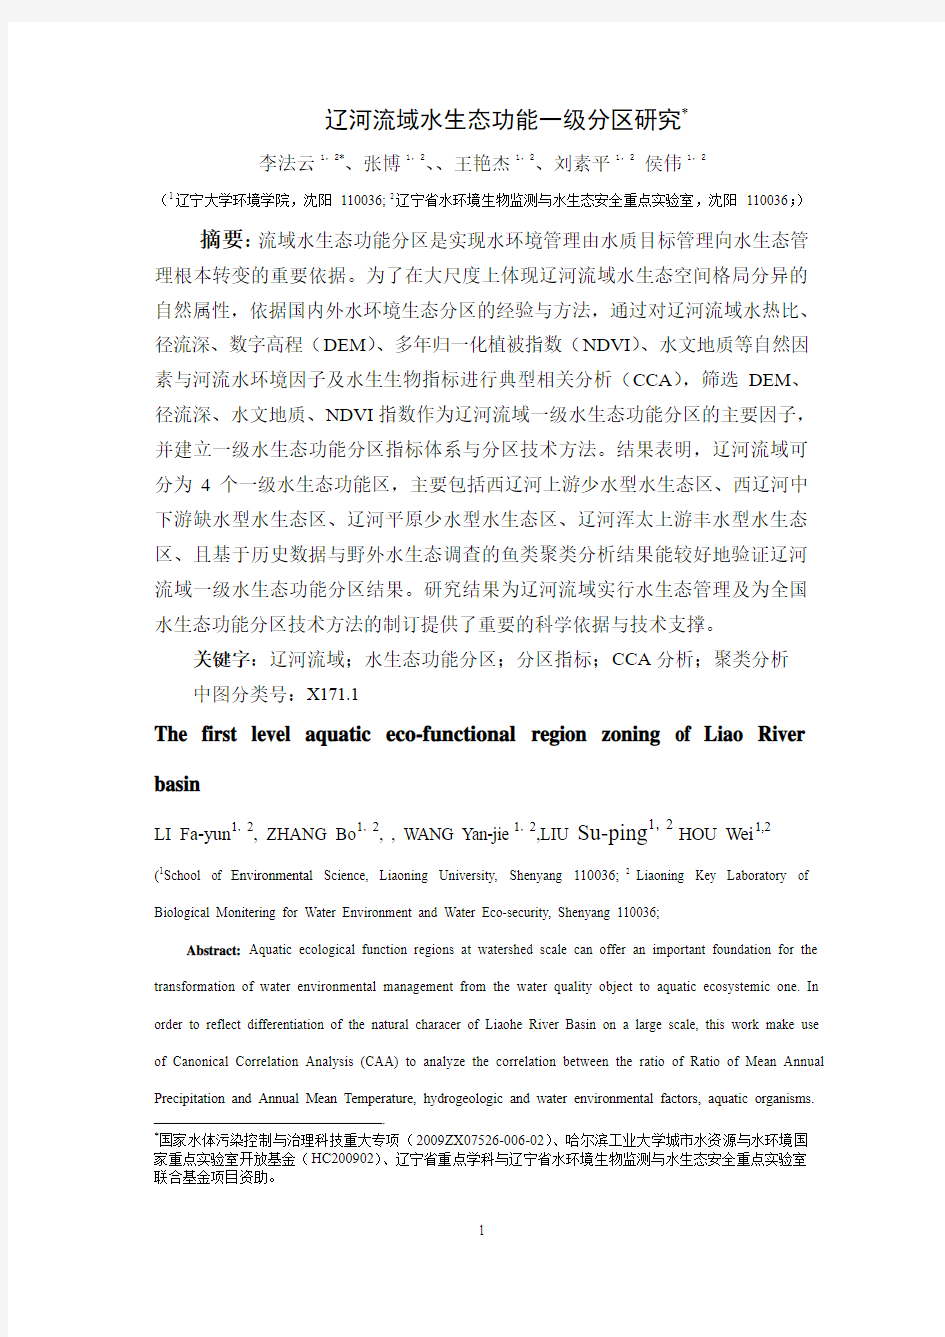 辽河流域一级分区研究(2011-2-20)